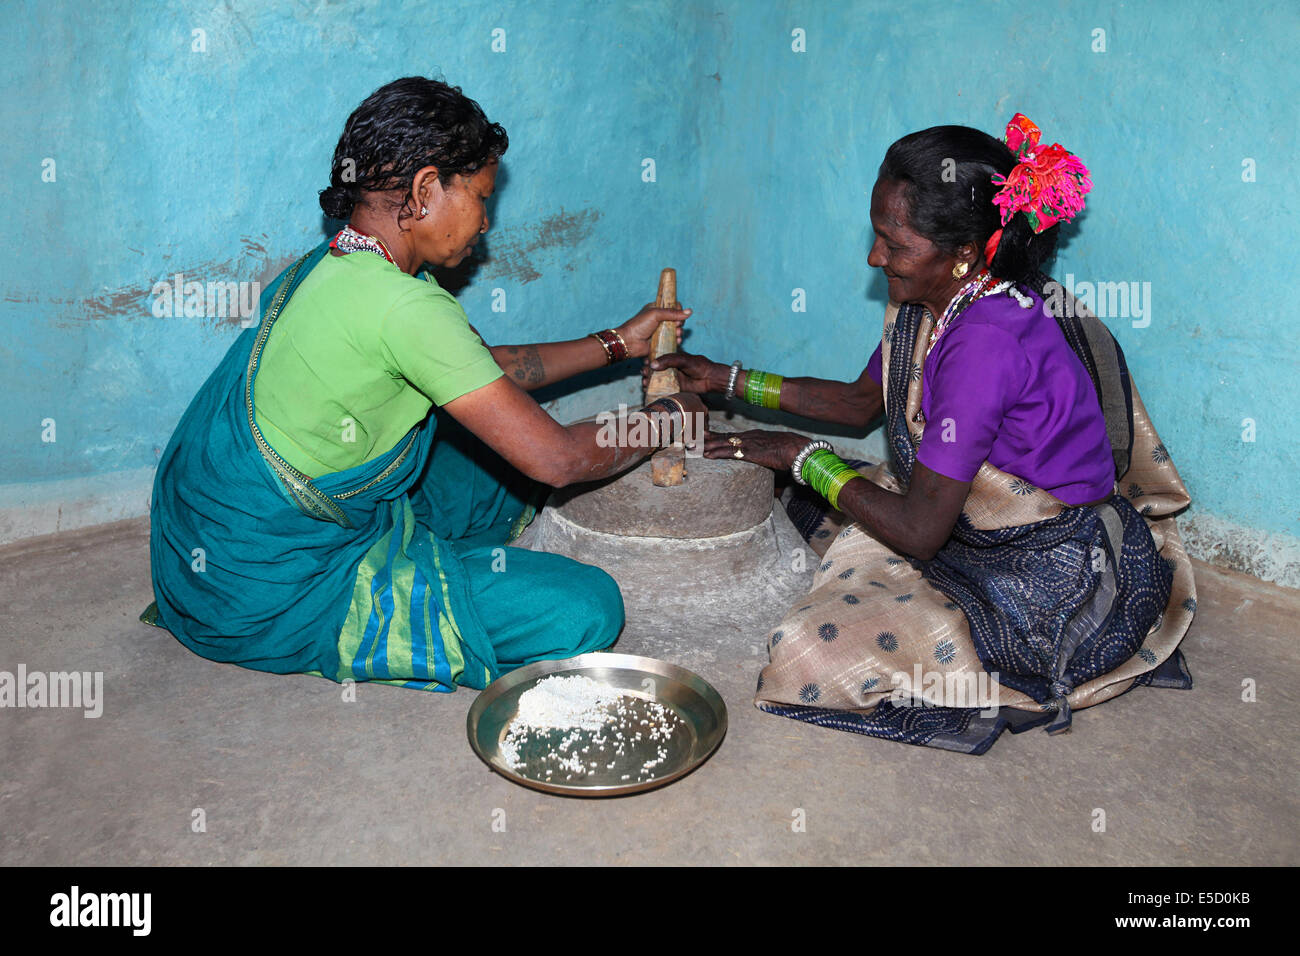 Stammesfrauen Mahlen von Reis, Baiga Stamm. Karangra Dorf, Chattisgadh, Indien Stockfoto